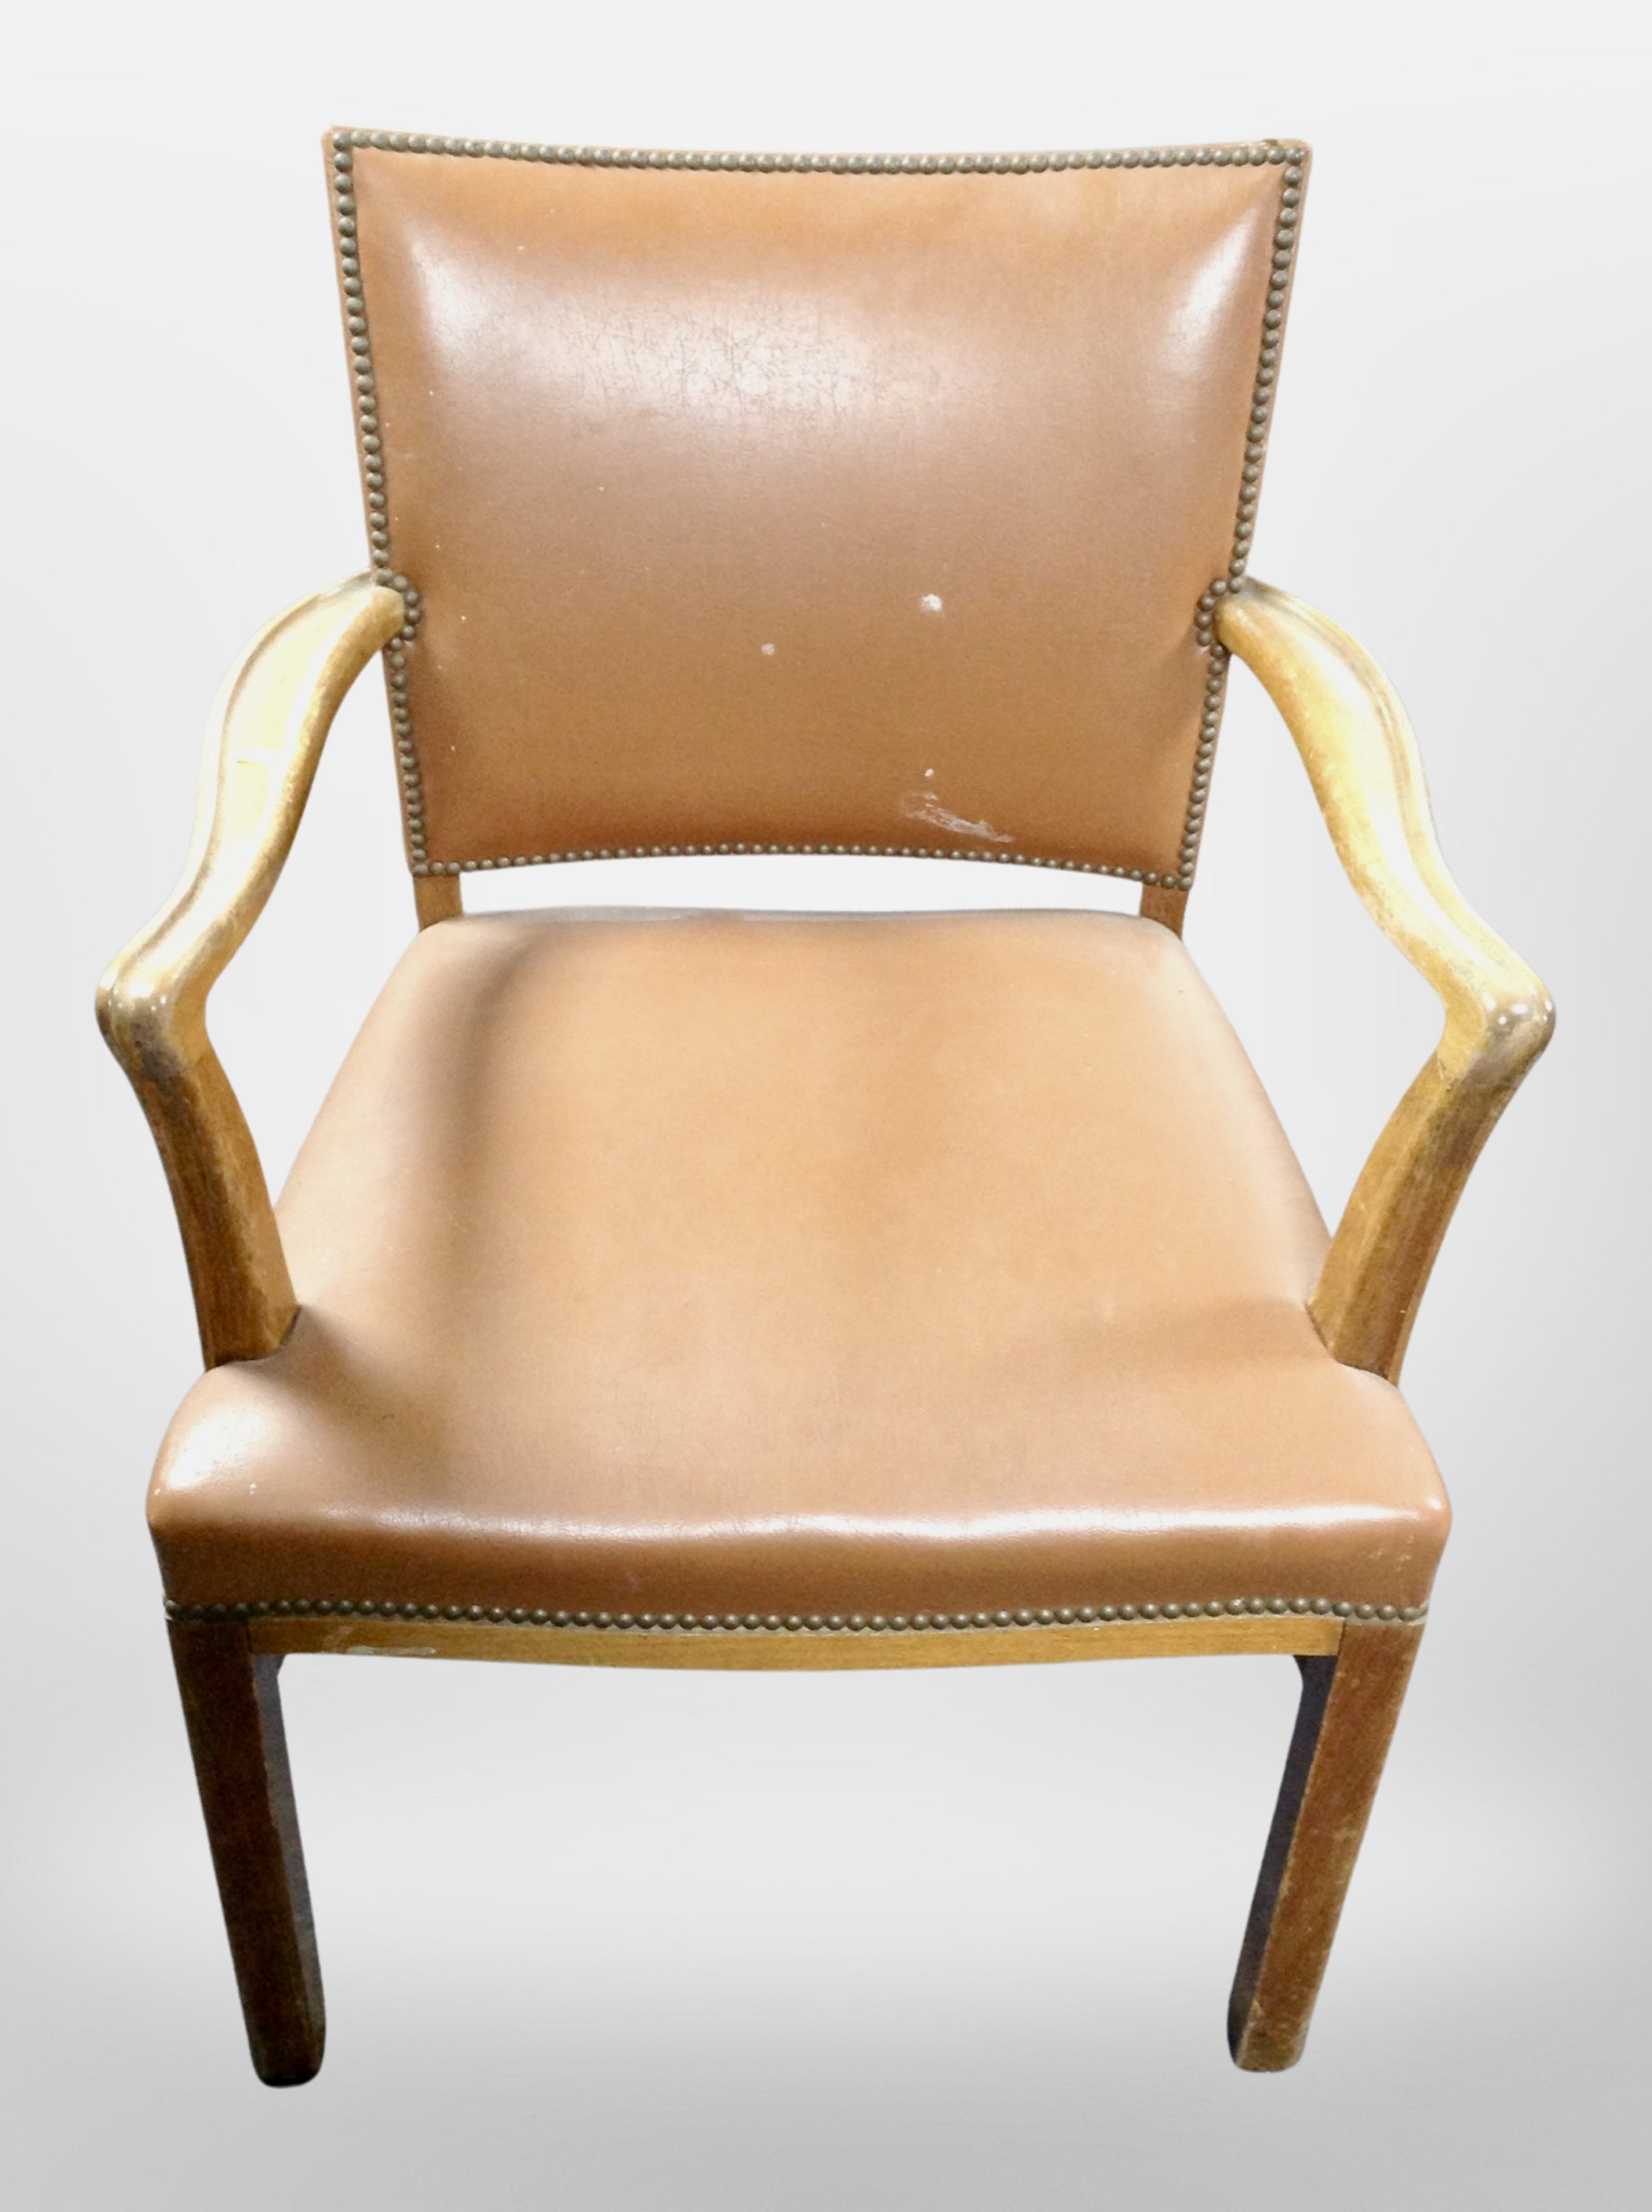 An armchair in studded tan vinyl